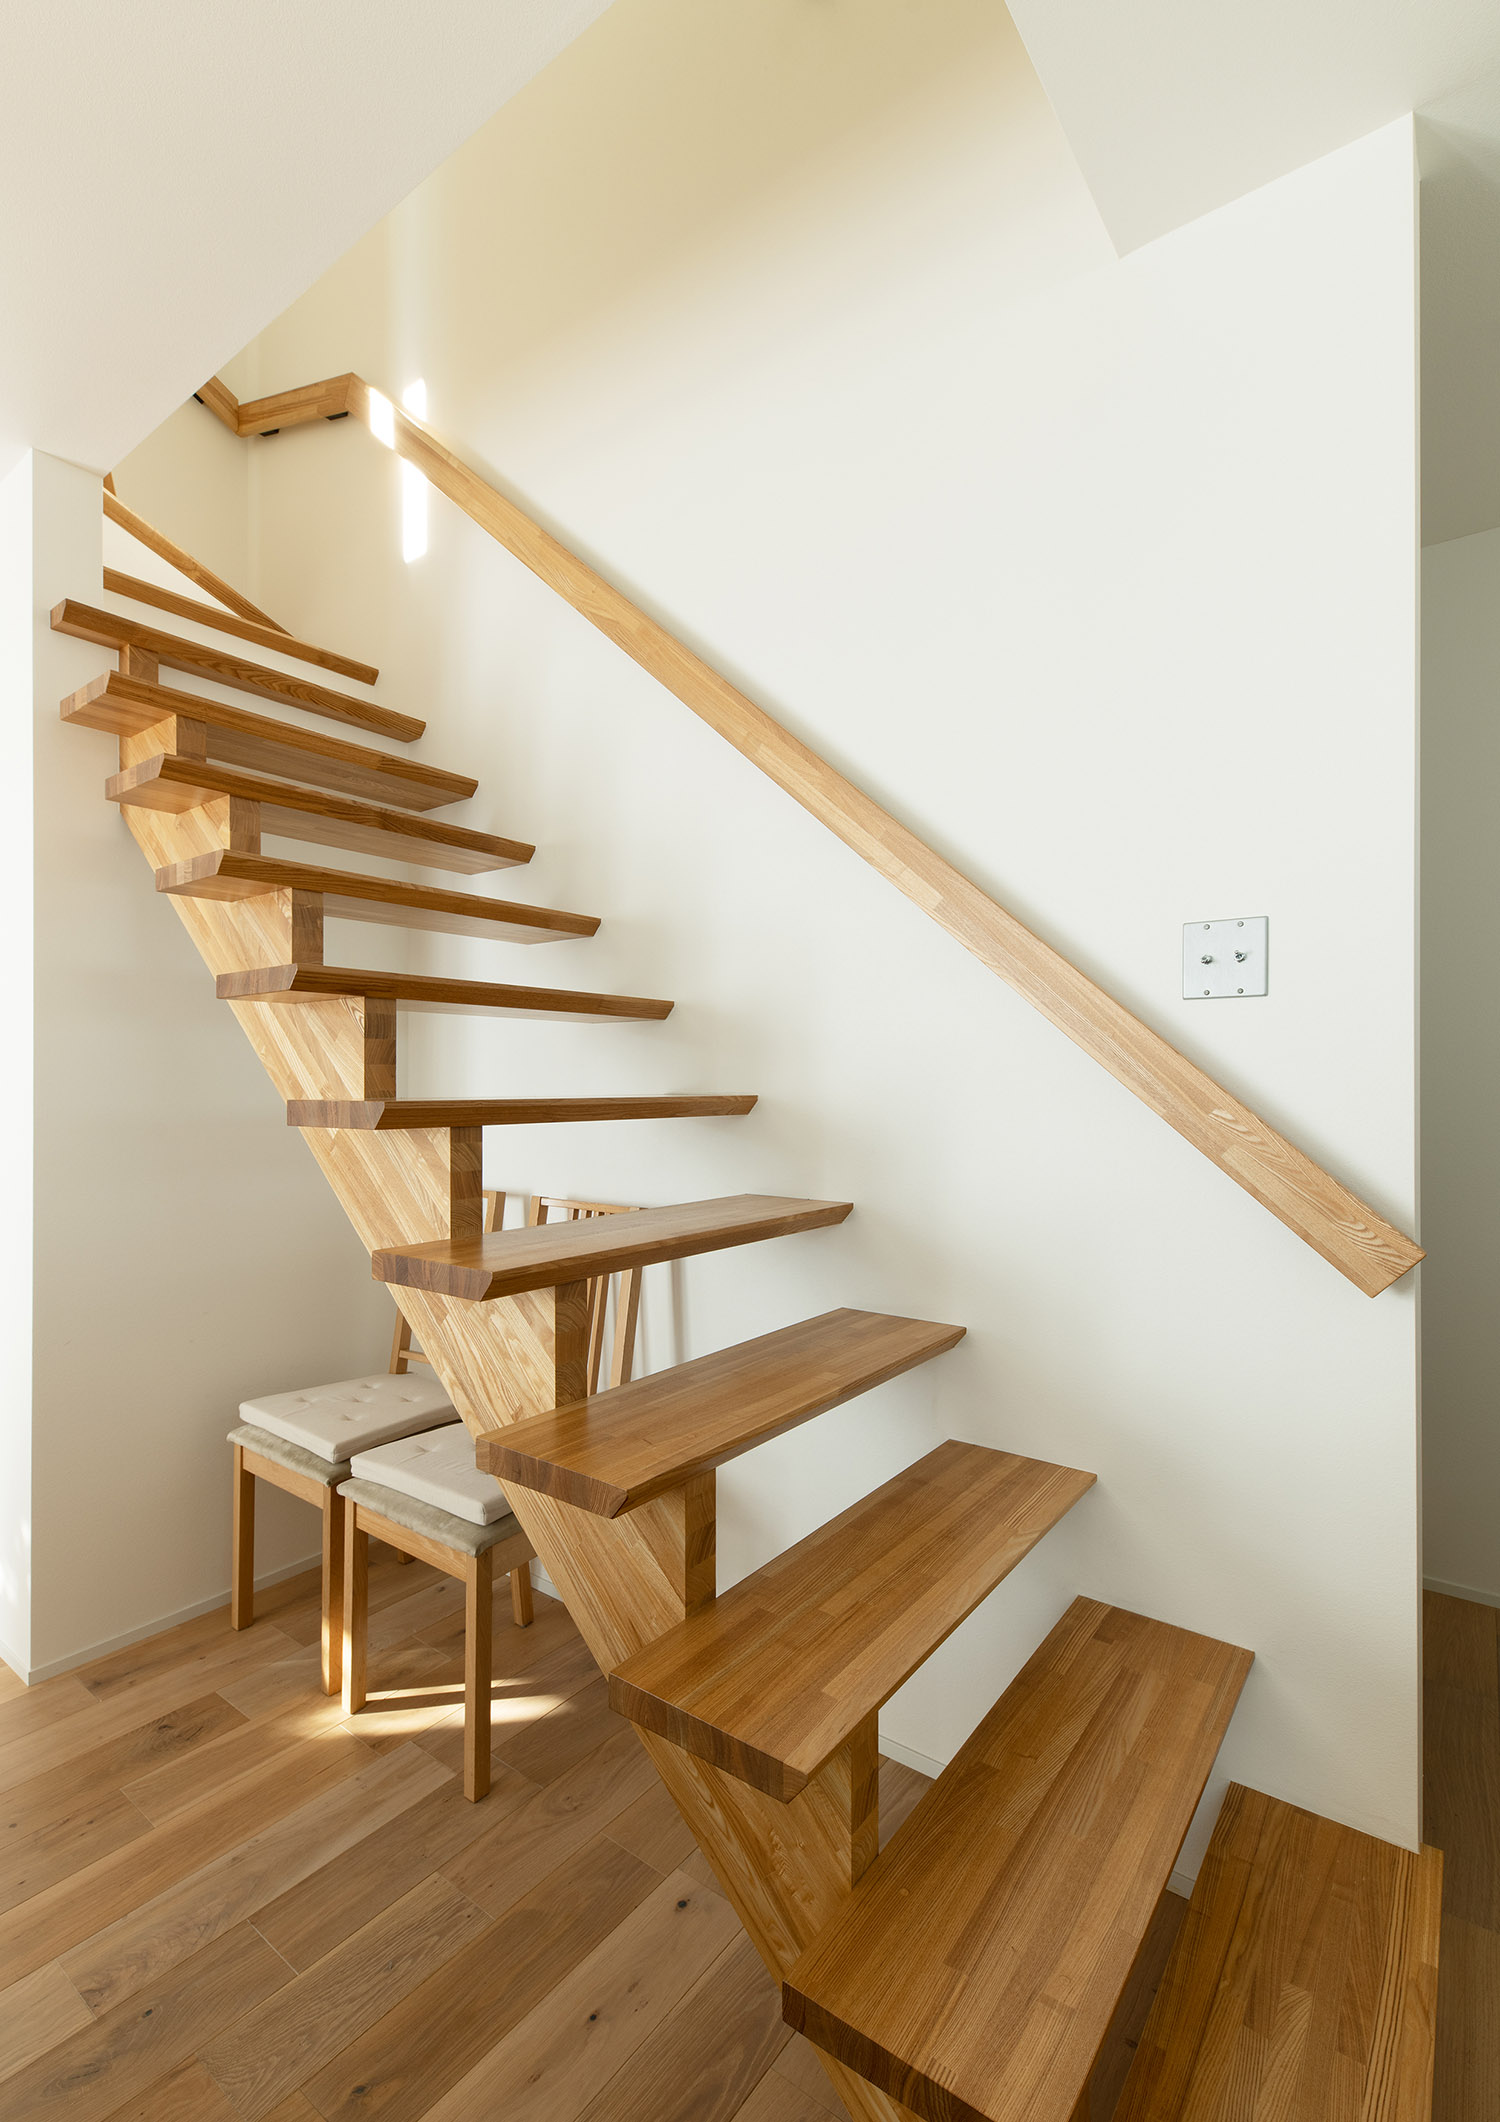 注文住宅・スケルトン階段・木製のスケルトン階段